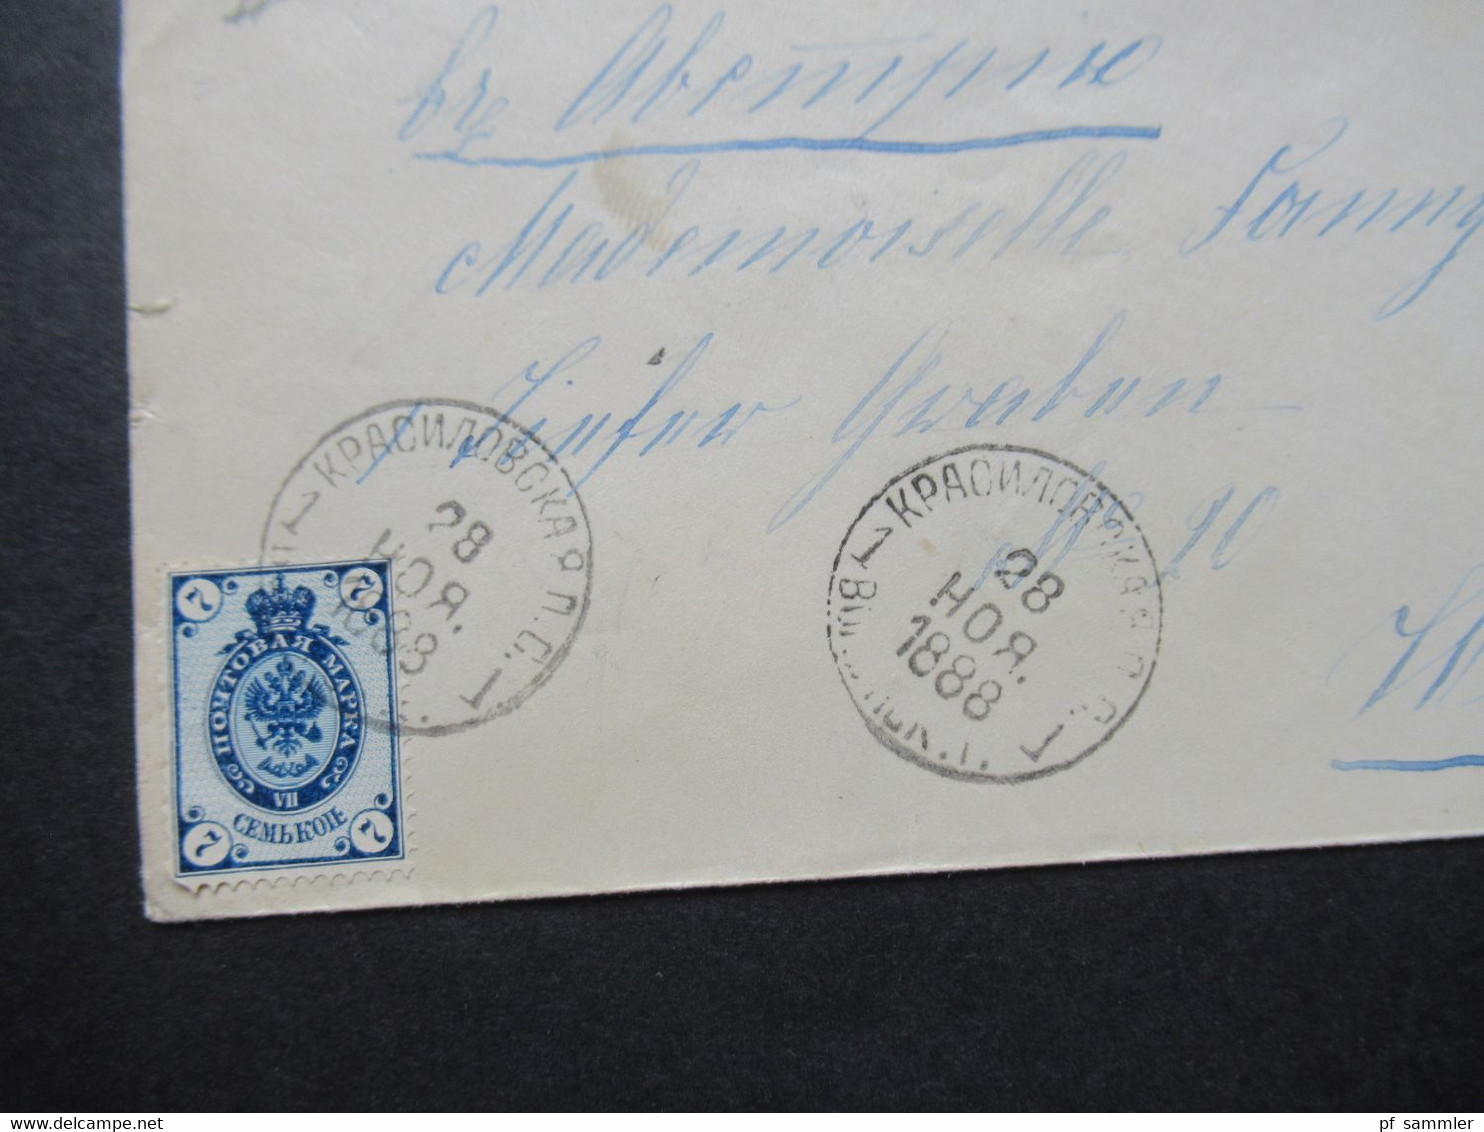 Russland 1888 Kleiner Umschlag Mit Zwei Stempeln Und Michel Nr.33 Auslandsbrief Nach Wien Gesendet - Briefe U. Dokumente